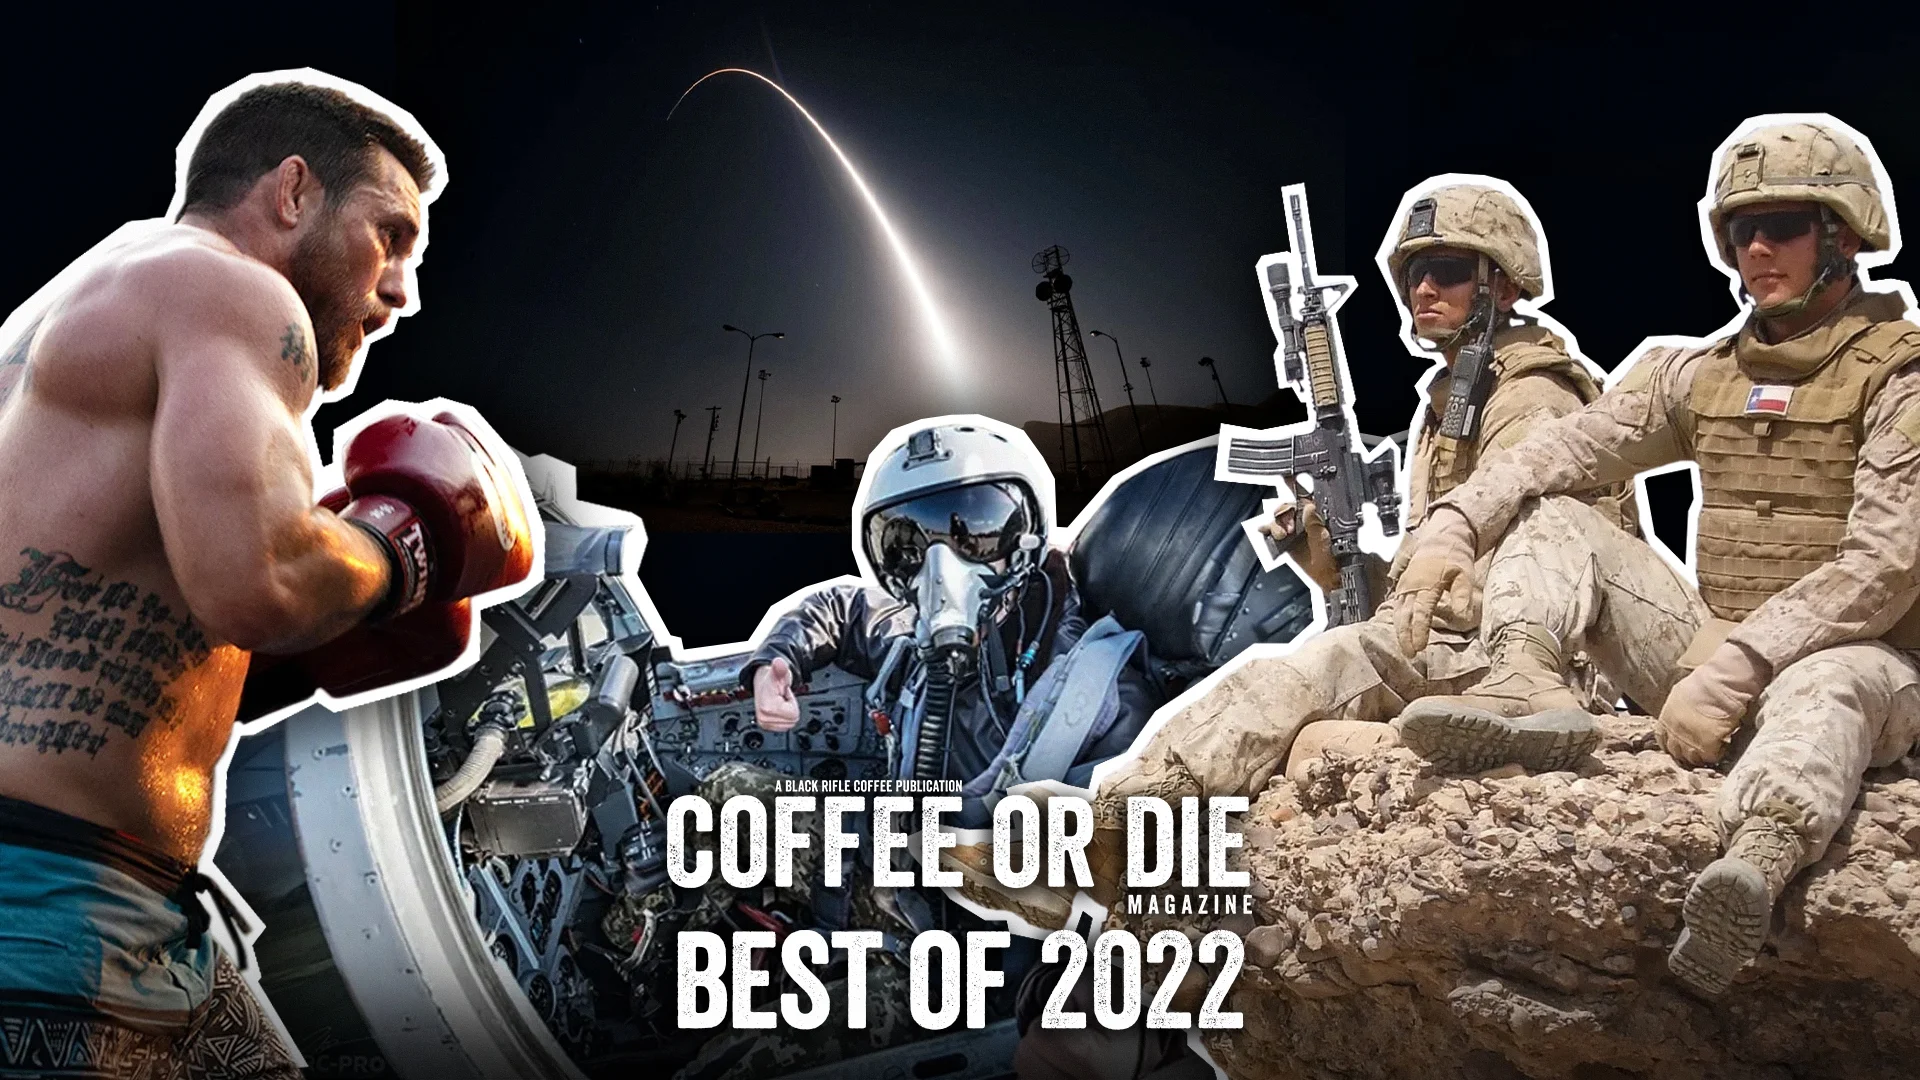 BestofCoD2022.jpg, best of coffee or die 2022